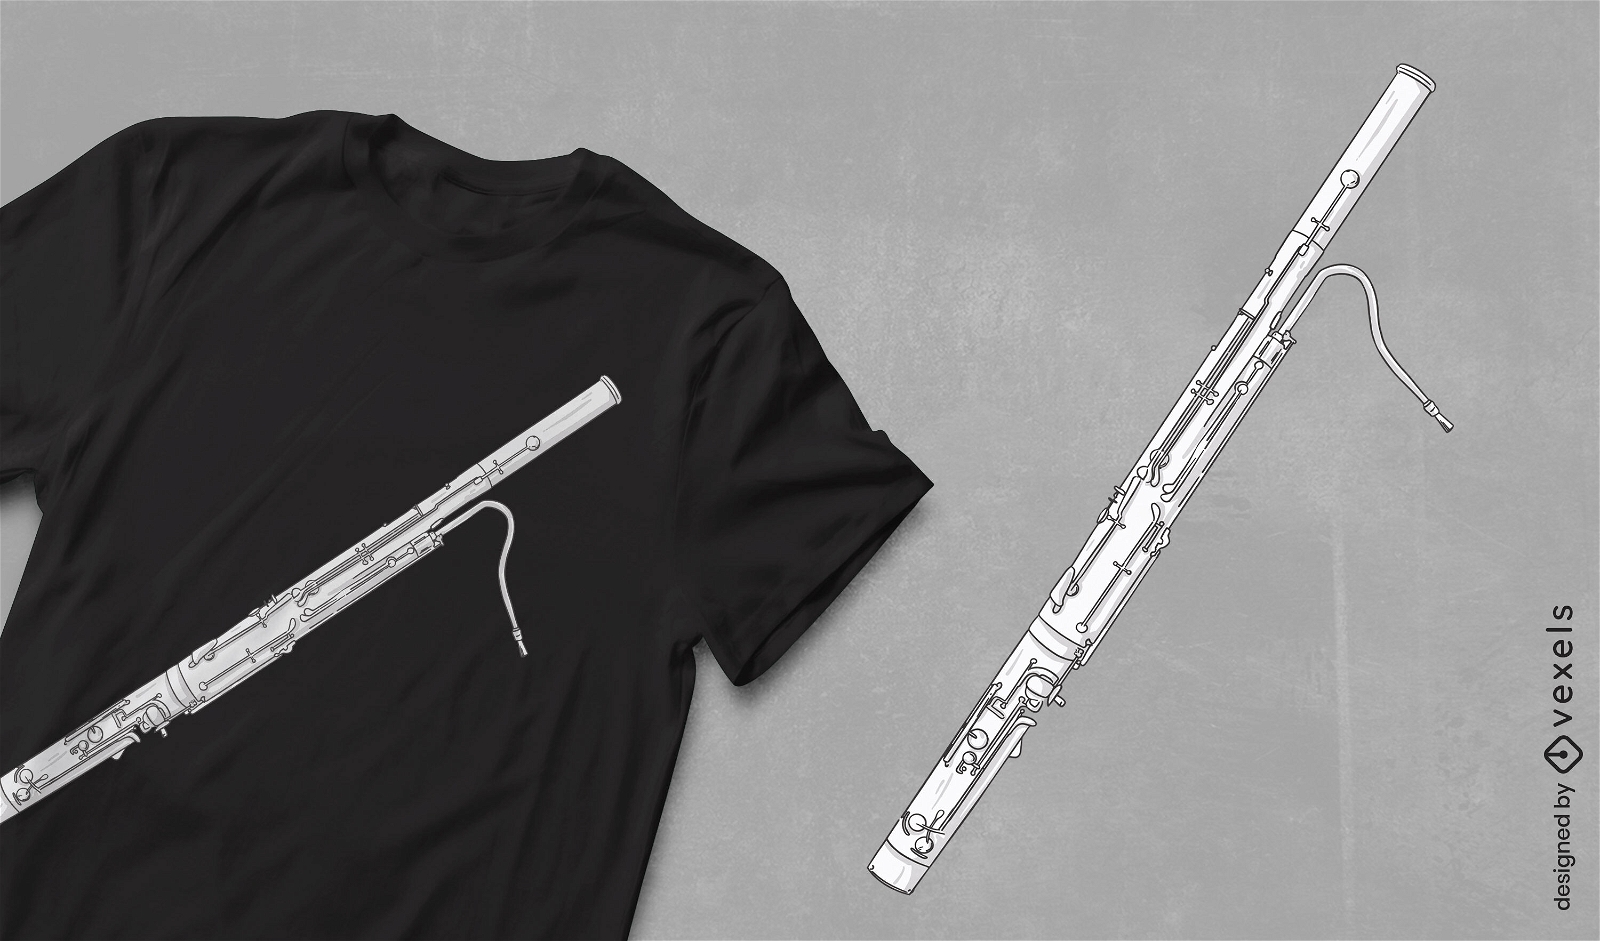 Bassoon music instrument t-shirt design